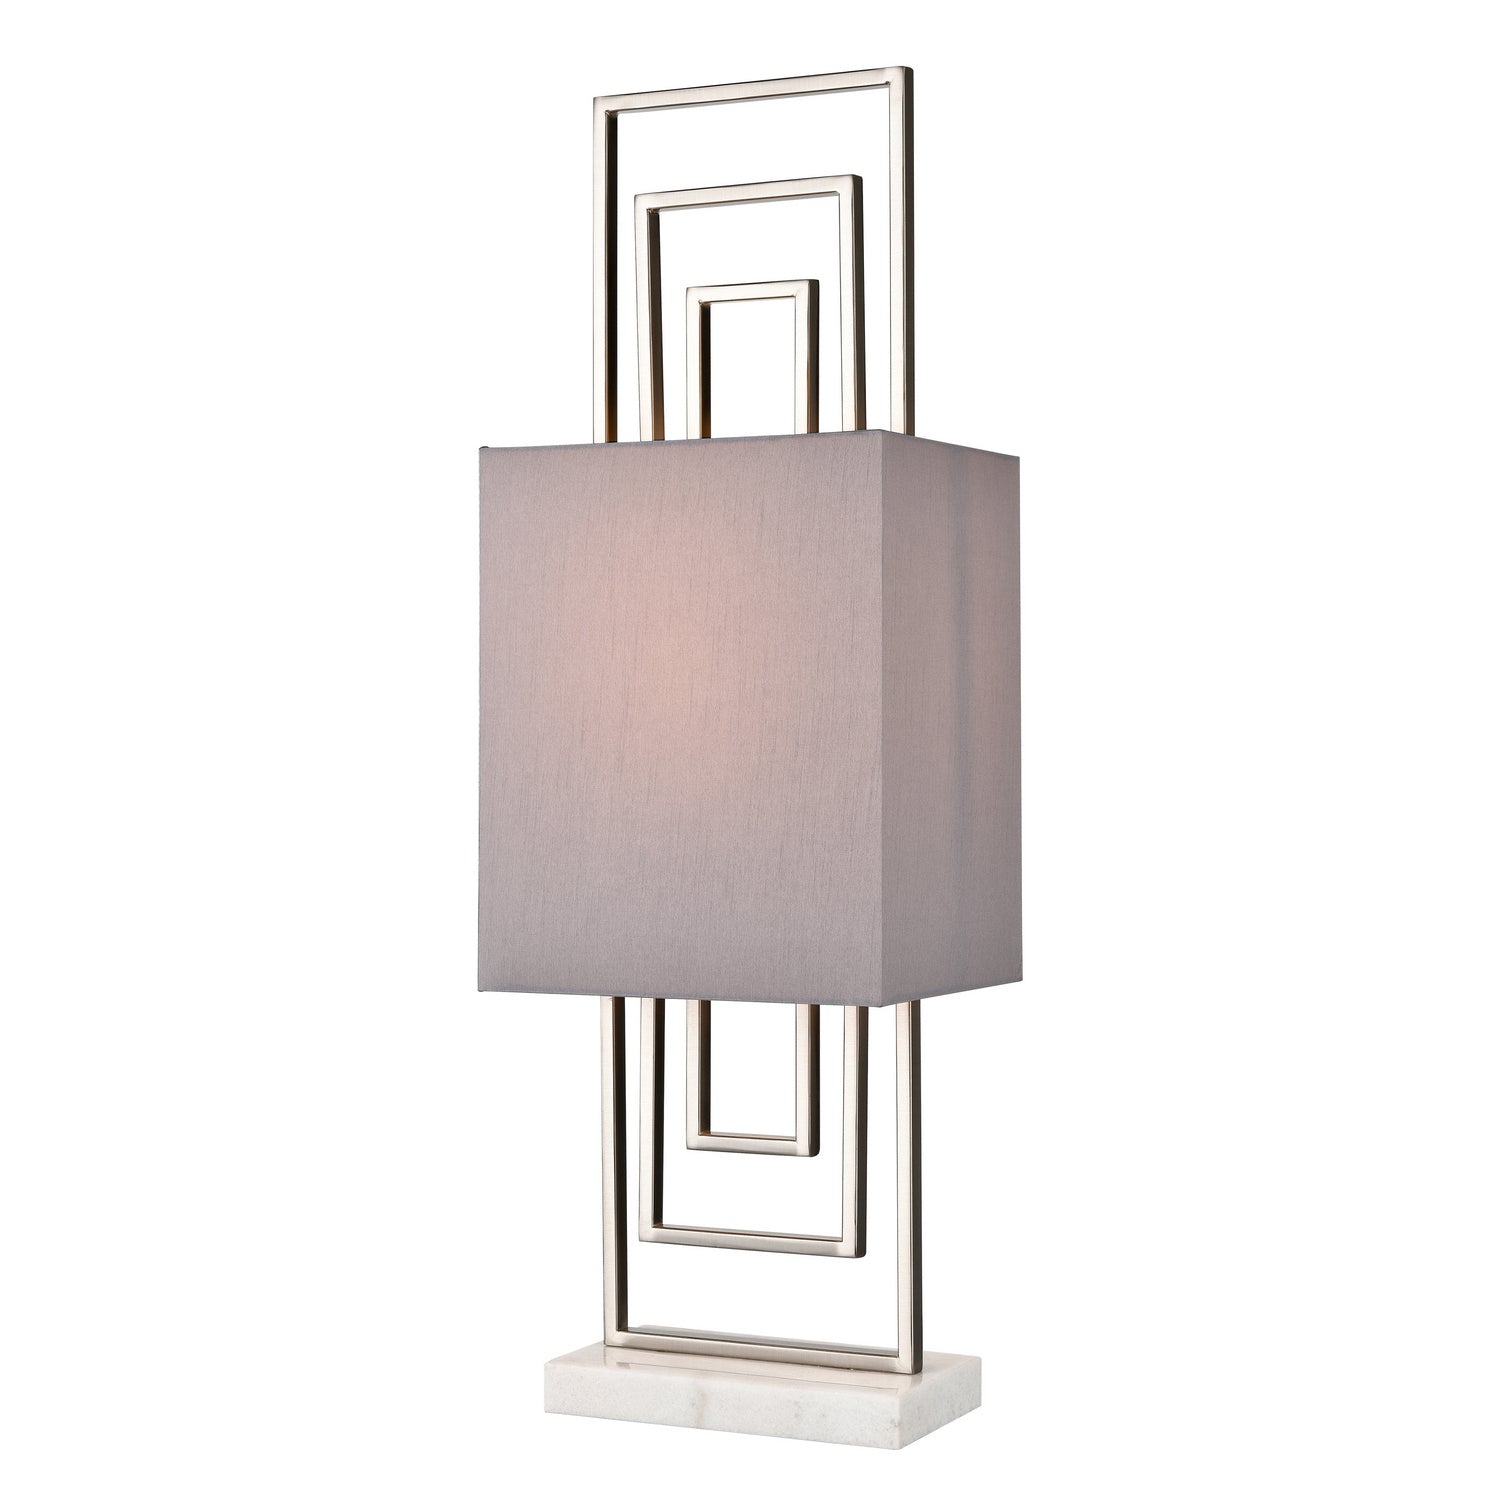 ELK Home - H0019-8556 - One Light Table Lamp - Marstrand - Satin Nickel